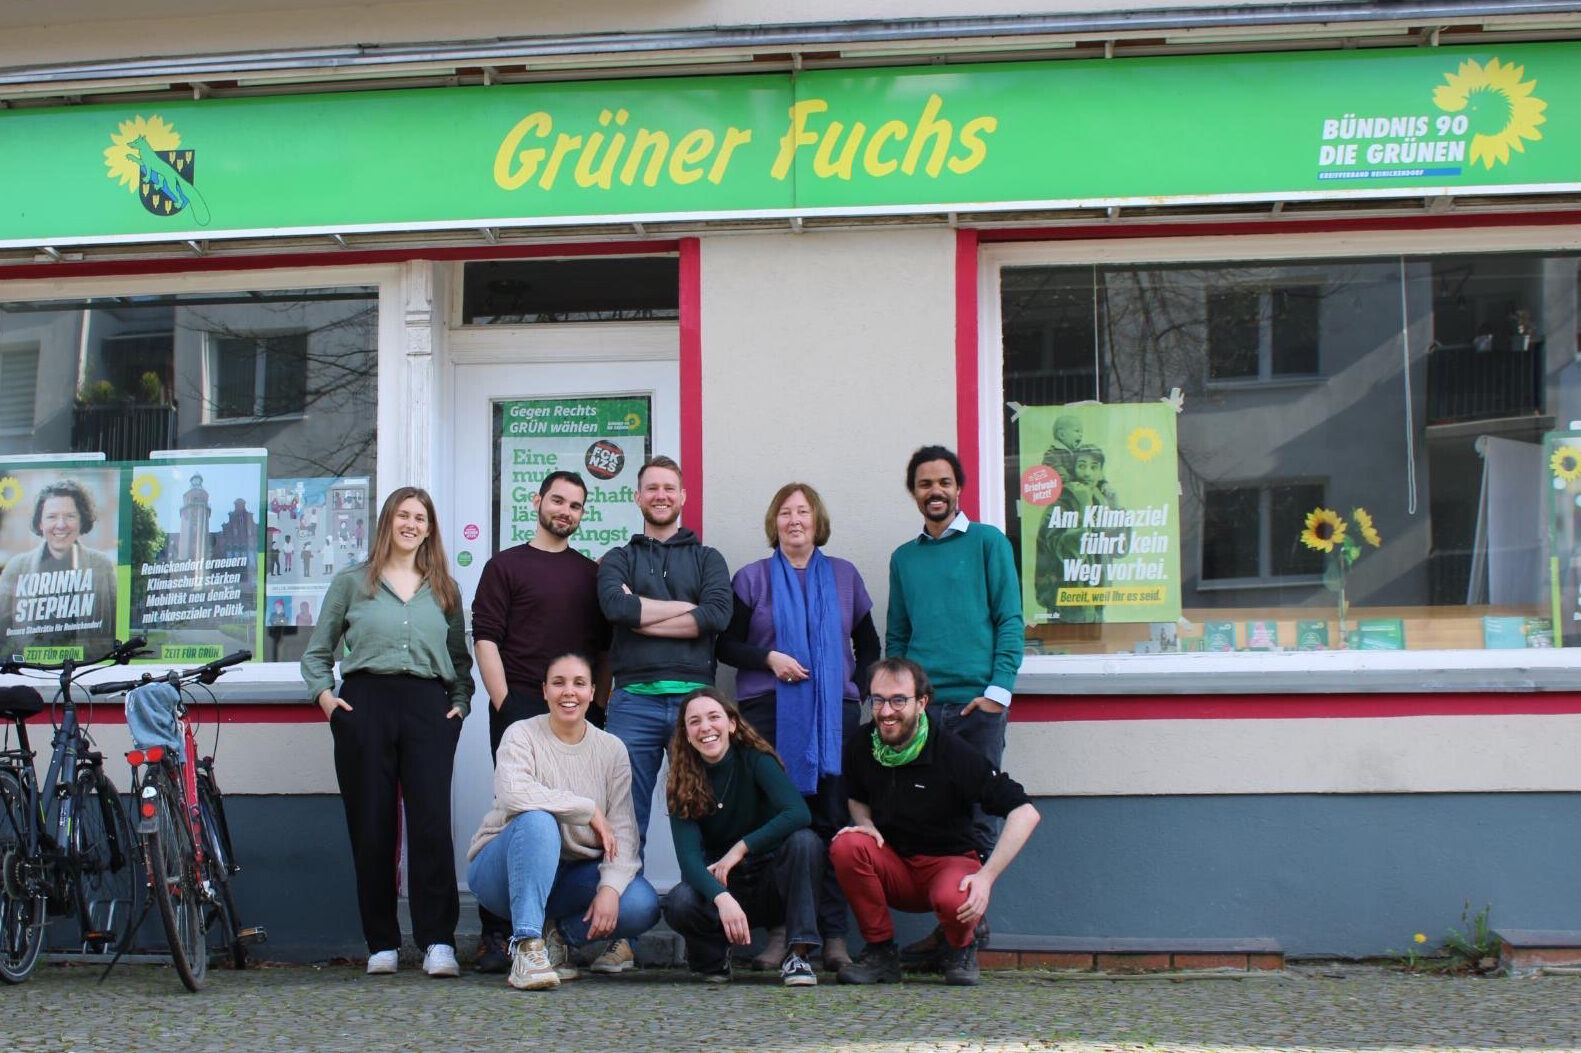 Das Bidl zeigt ein Gruppenfoto des Vorstands vom Kreisverband Reinickendorf. Die Mitglieder des Vorstands posieren dabei vor der Geschäftsstelle des Kreisverbands in der Brunowstraße. Über dem Eingang ist der Schriftzug "Grüner Fuchs" zu sehen. 